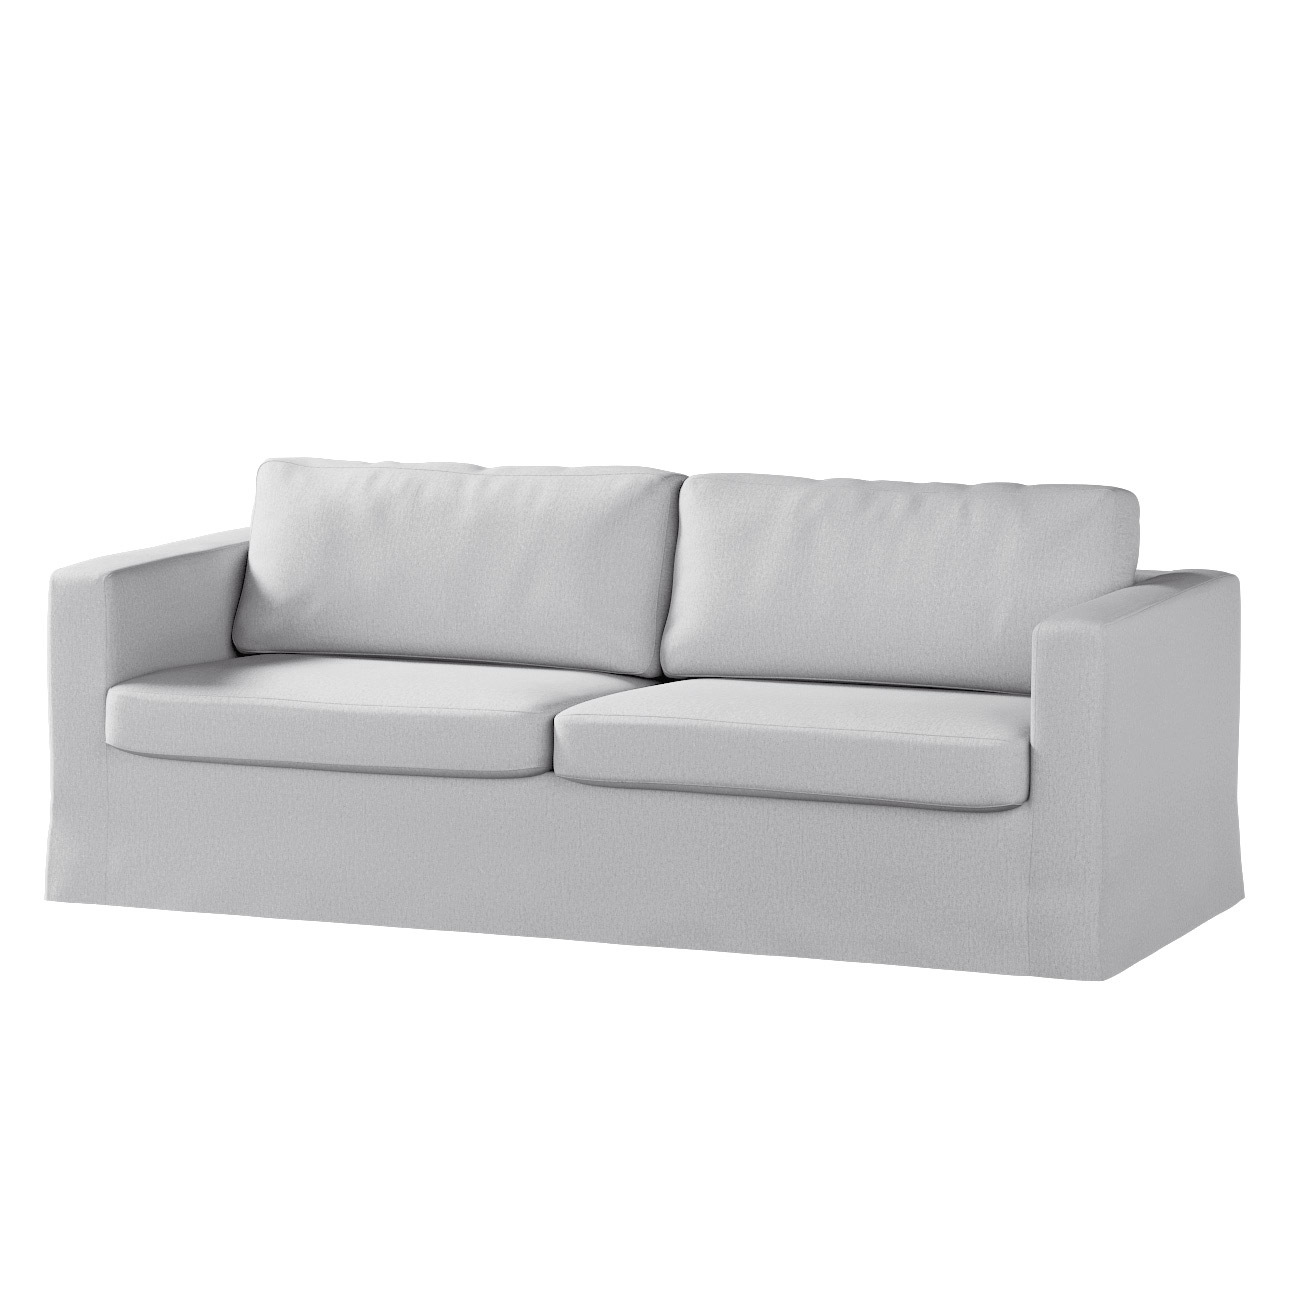 Bezug für Karlstad 3-Sitzer Sofa nicht ausklappbar, lang, szary, Bezug für günstig online kaufen